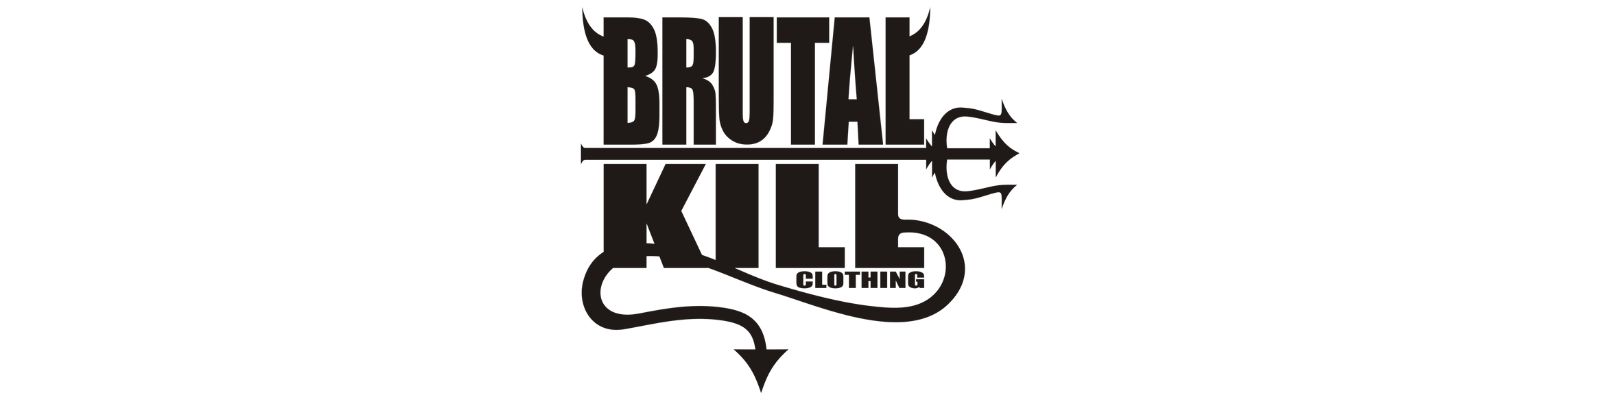 Brutal Kill é confiável? Confira os detalhes sobre a empresa!